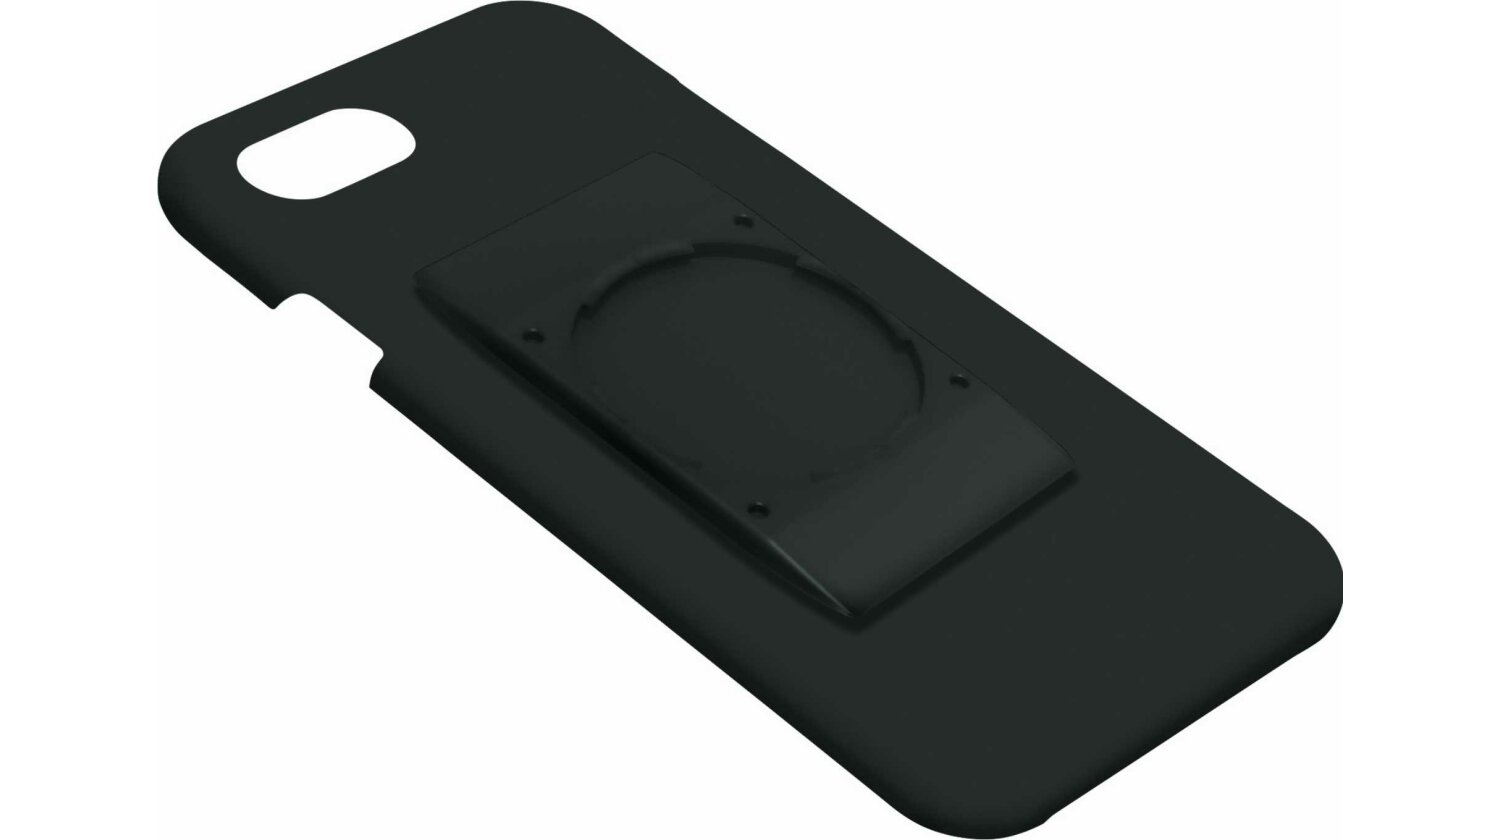 SKS Compit Cover Halterung Iphone schwarz